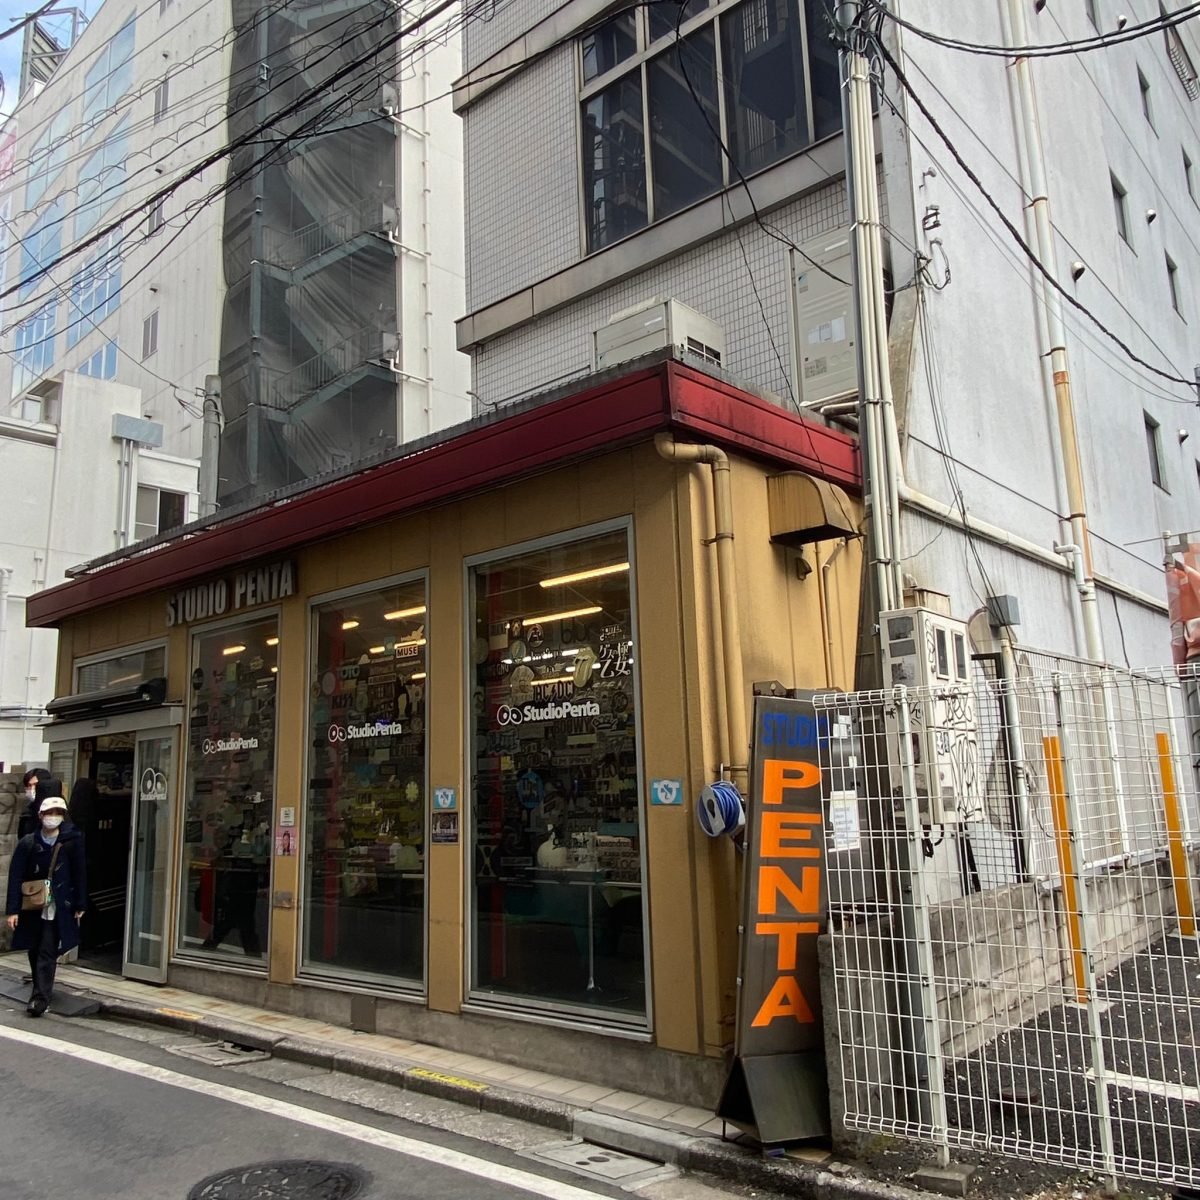 スタジオペンタ新宿店